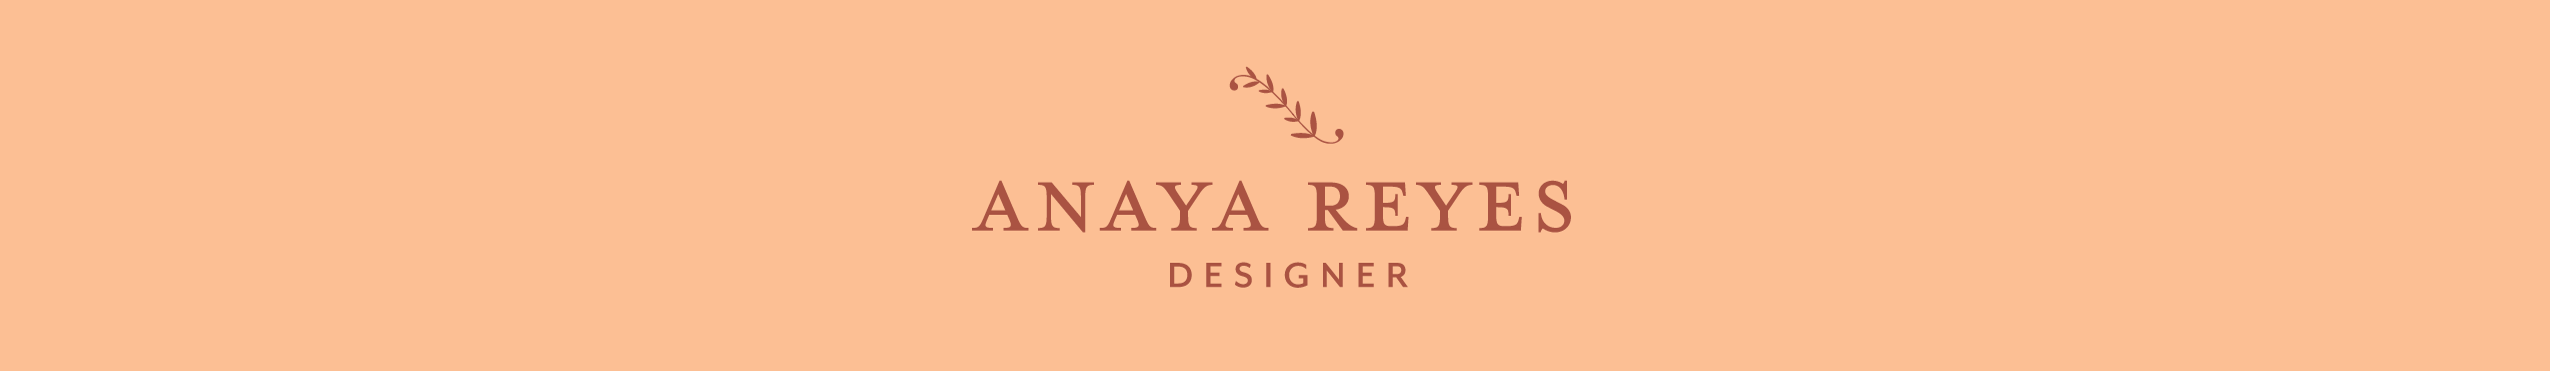 Bannière de profil de Anaya Reyes